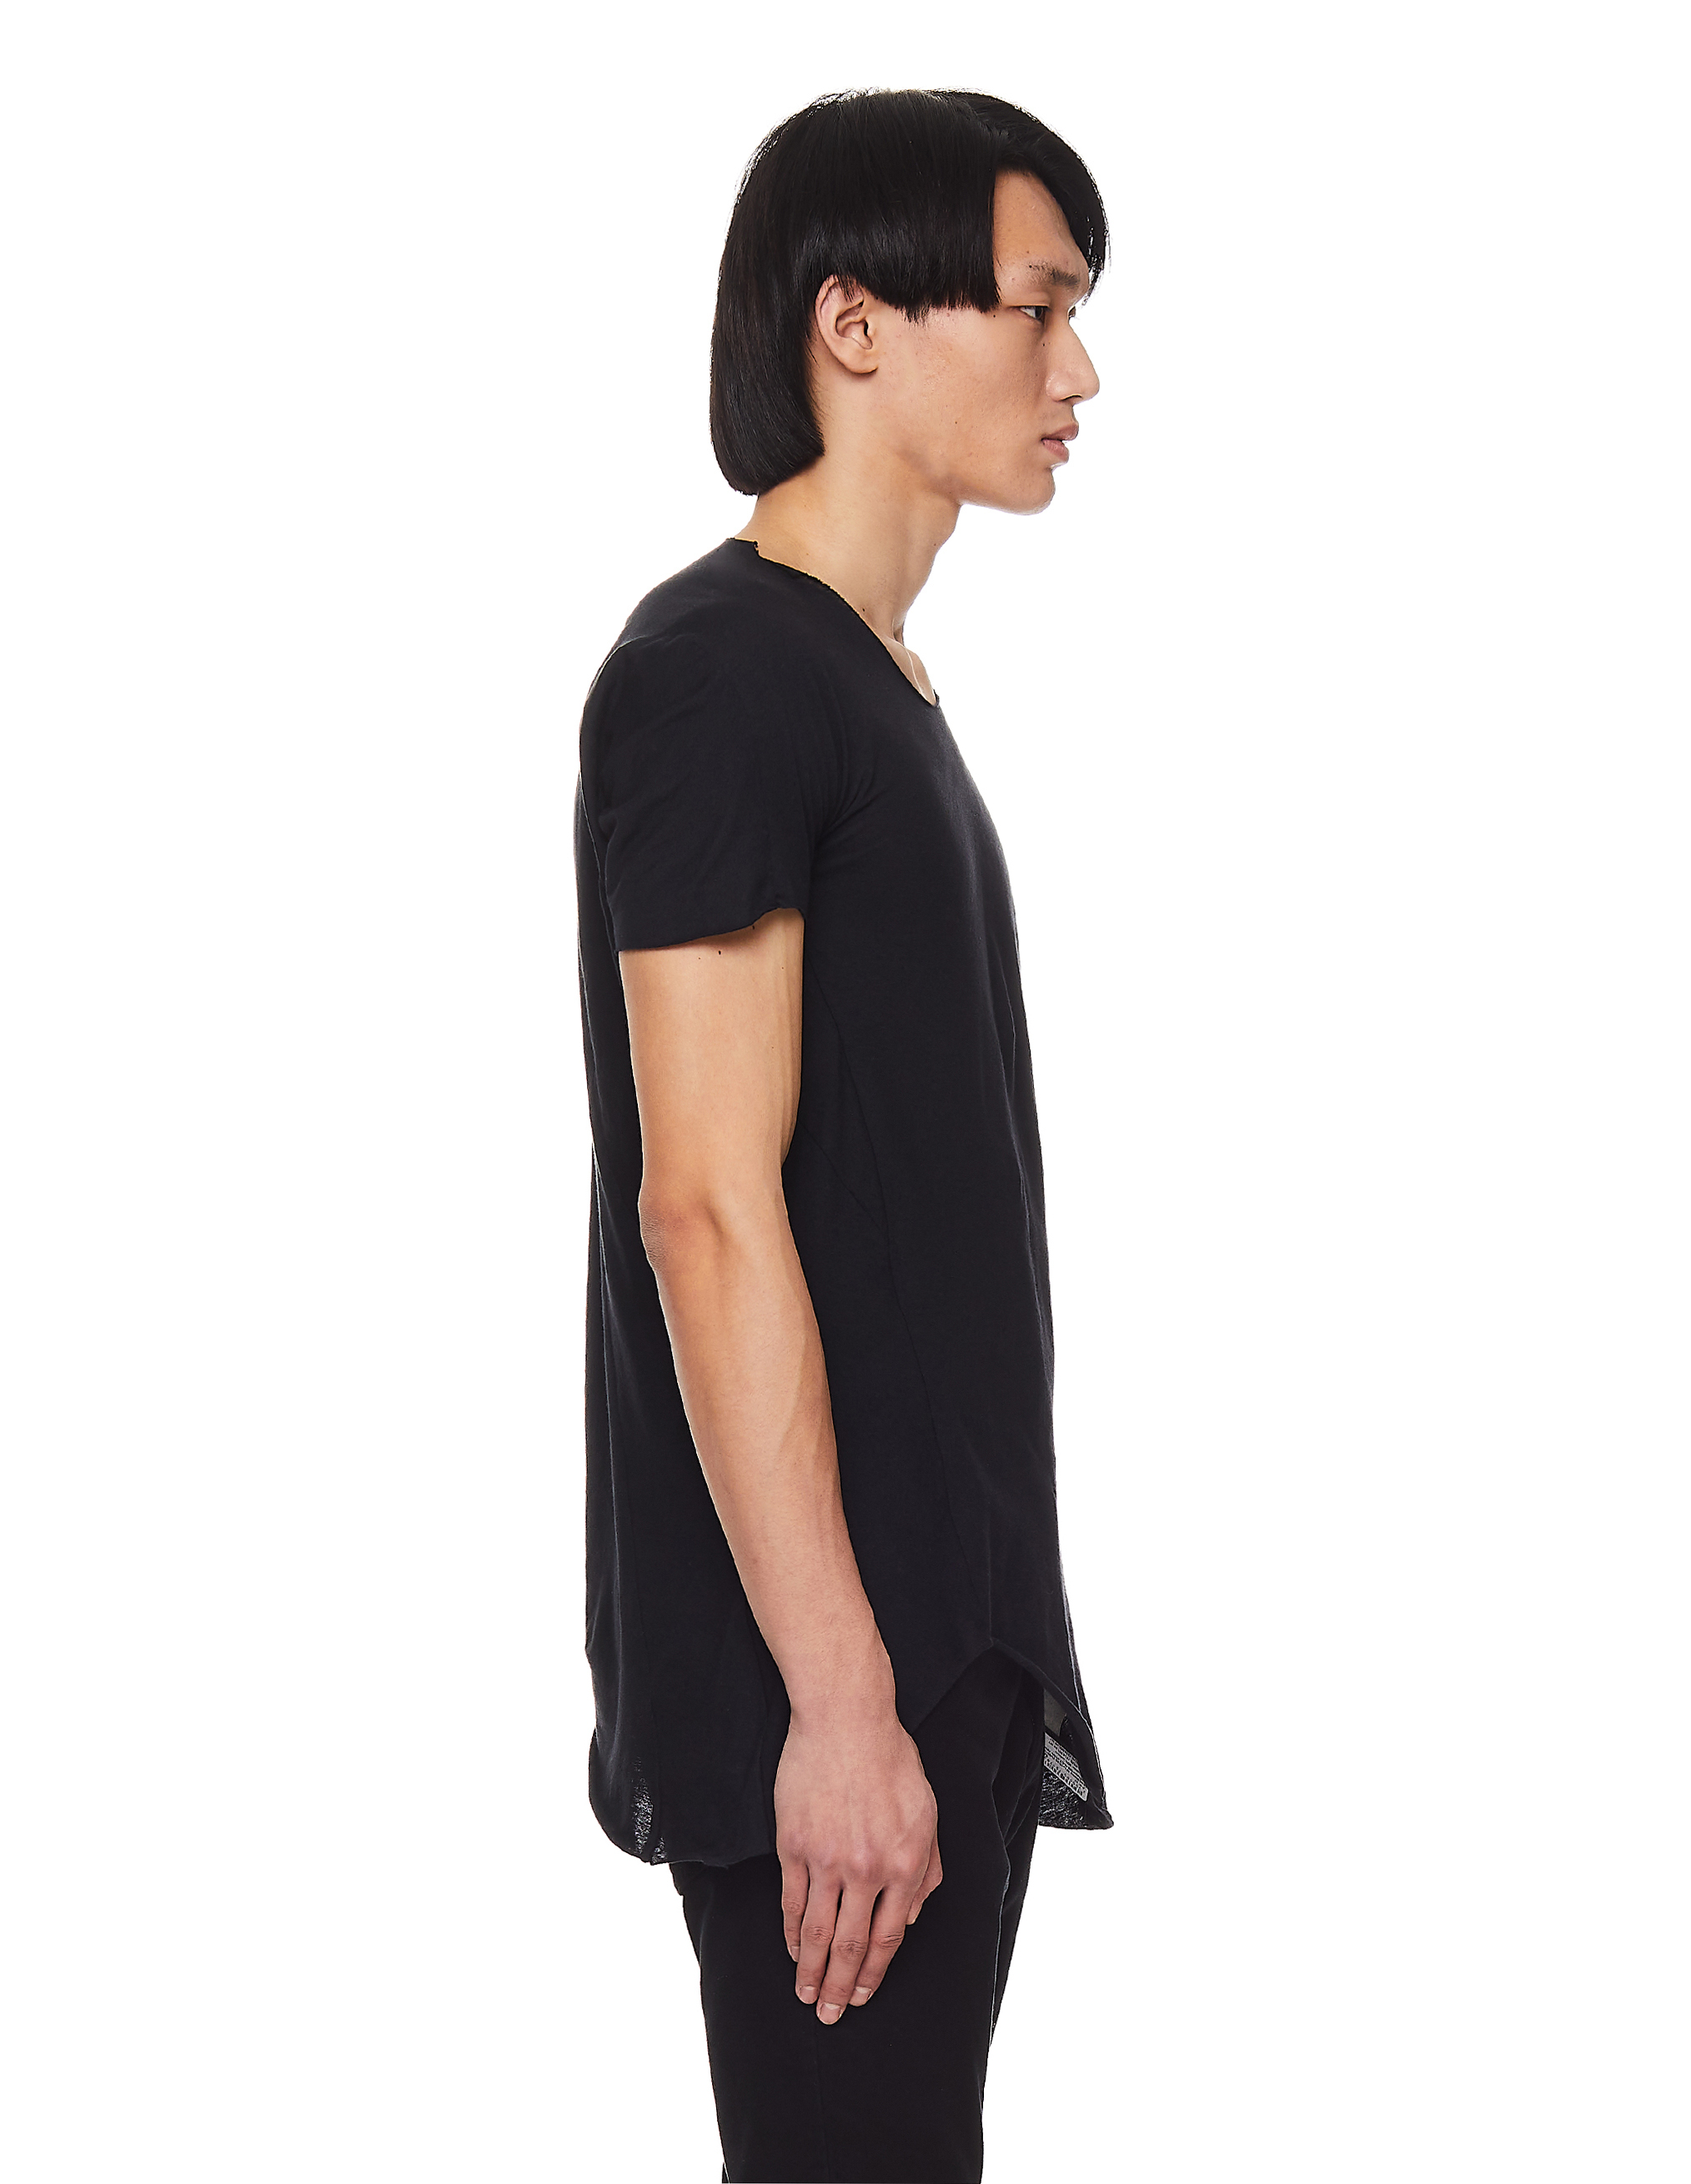 Черная футболка из хлопка и шерсти Leon Emanuel Blanck DIS-M-CT-01/blk, размер 52 DIS-M-CT-01/blk - фото 3